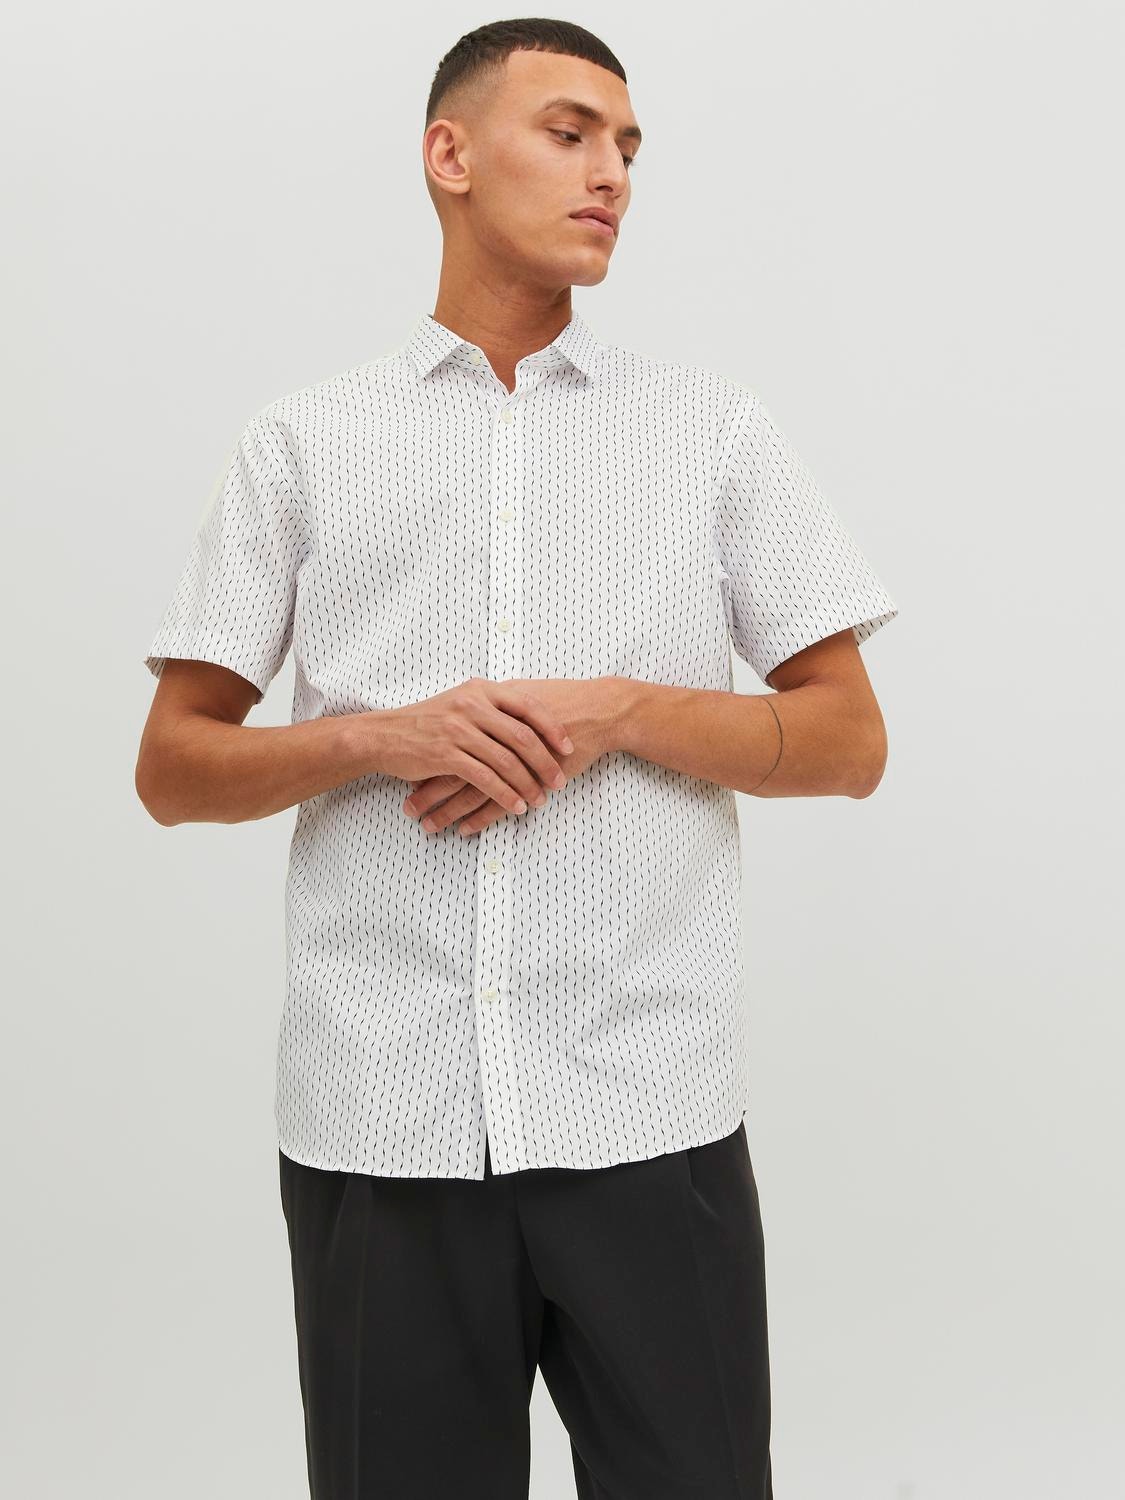 Jack & Jones Regular Fit Neformalus marškiniai -White - 12231865